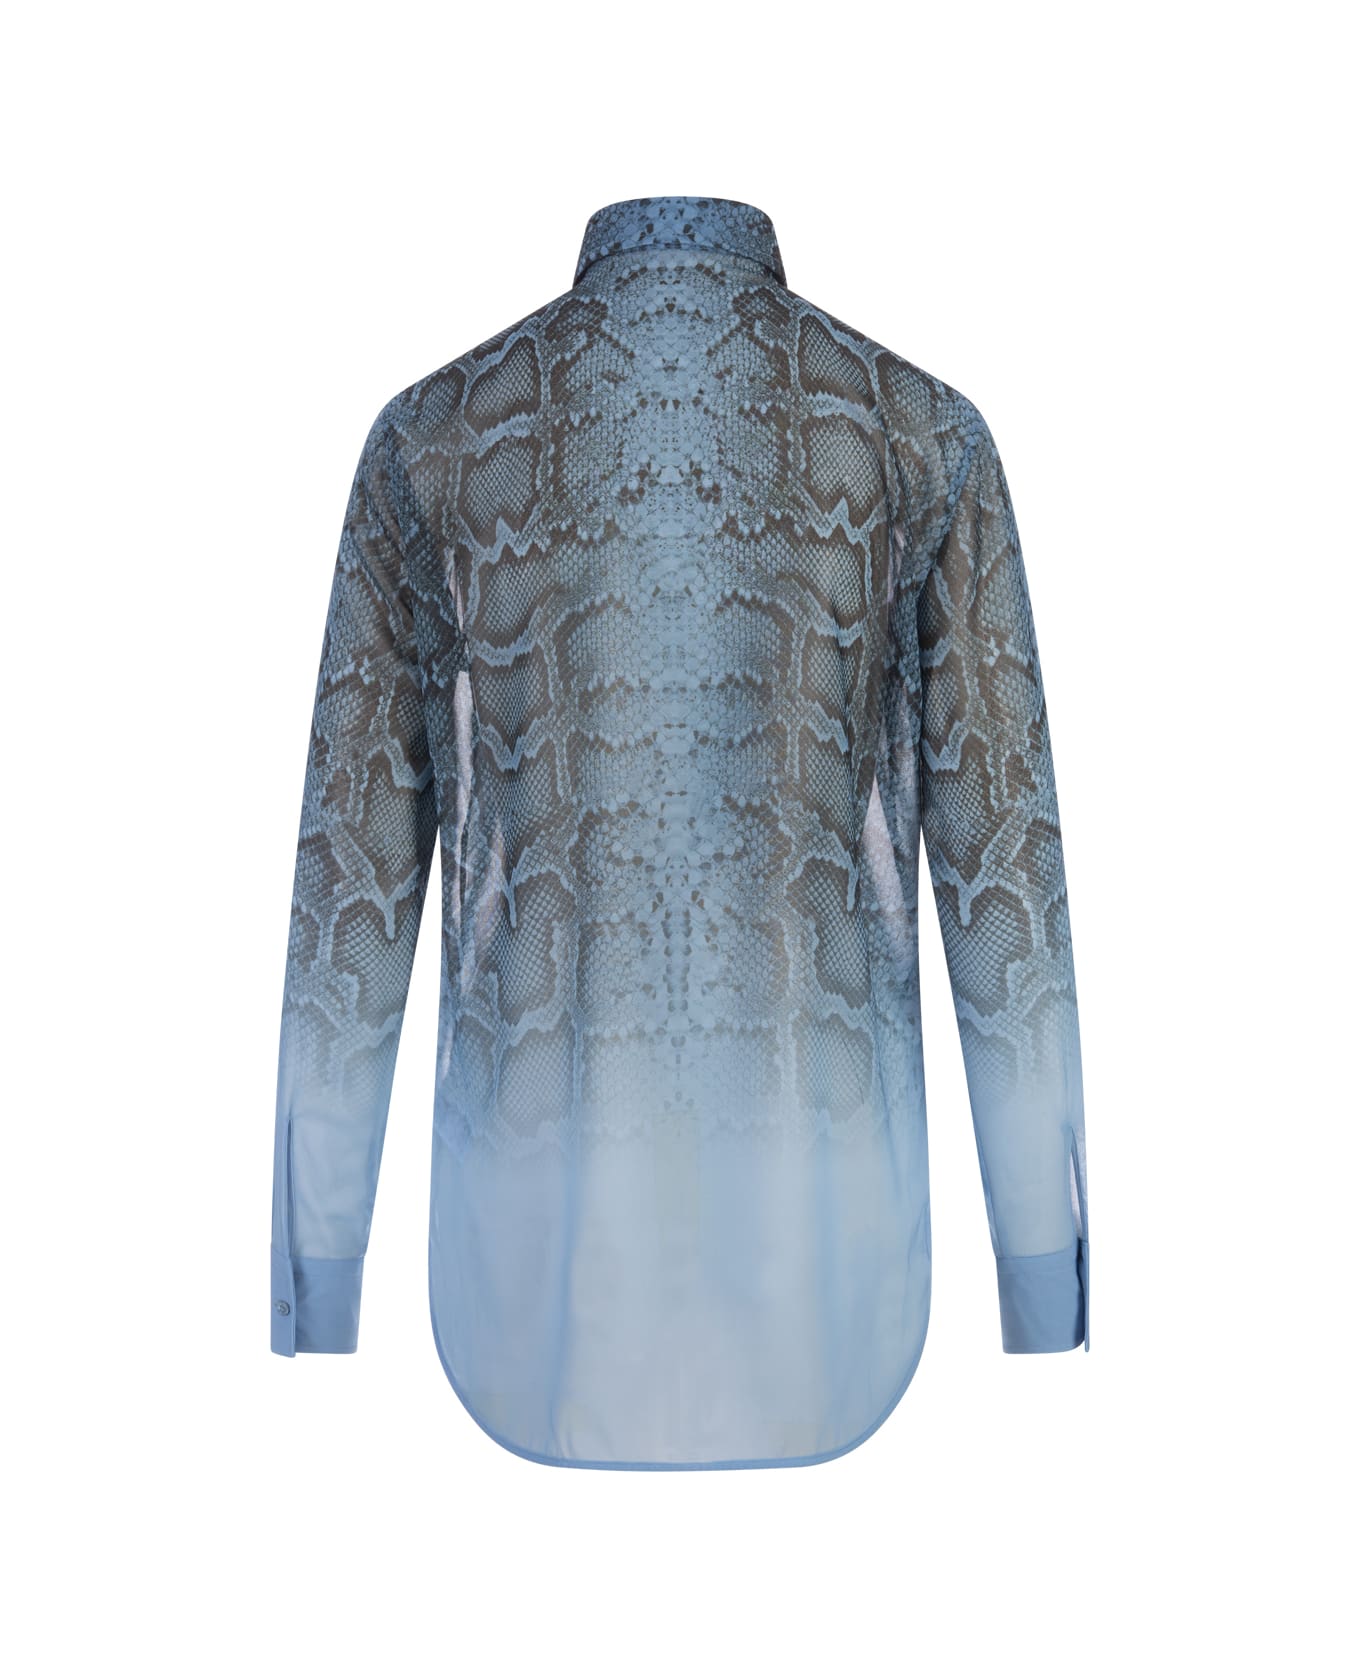 Ermanno Scervino Blue Shirt With Ruffles And Degradé Python Print - Blue